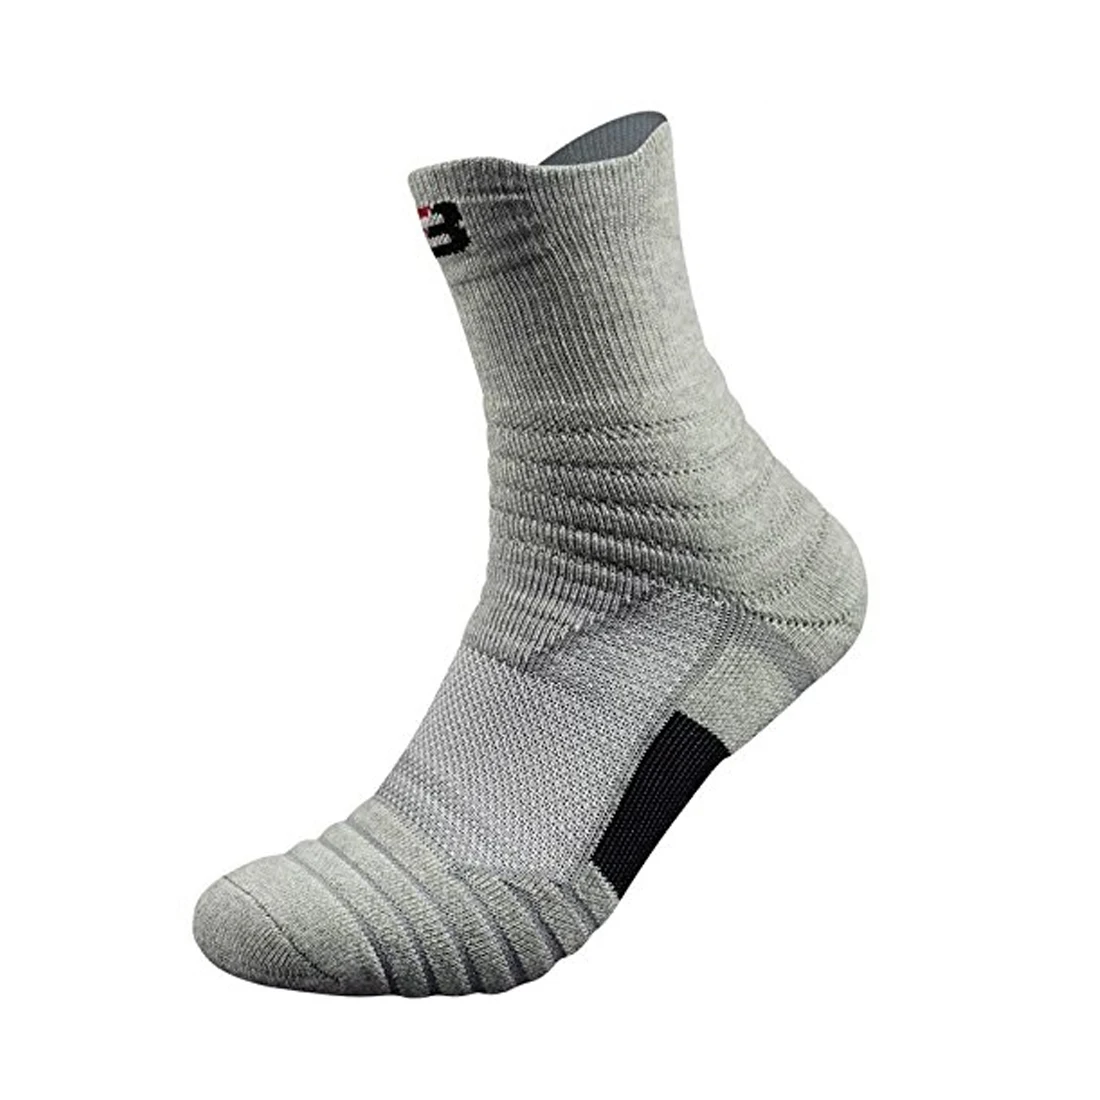 SFIT velonoski профессиональные спортивные носки баскетбольные зимние толстые уличные Спортивные Компрессионные носки для фитнеса Chaussette Homme Sports - Цвет: E414234A